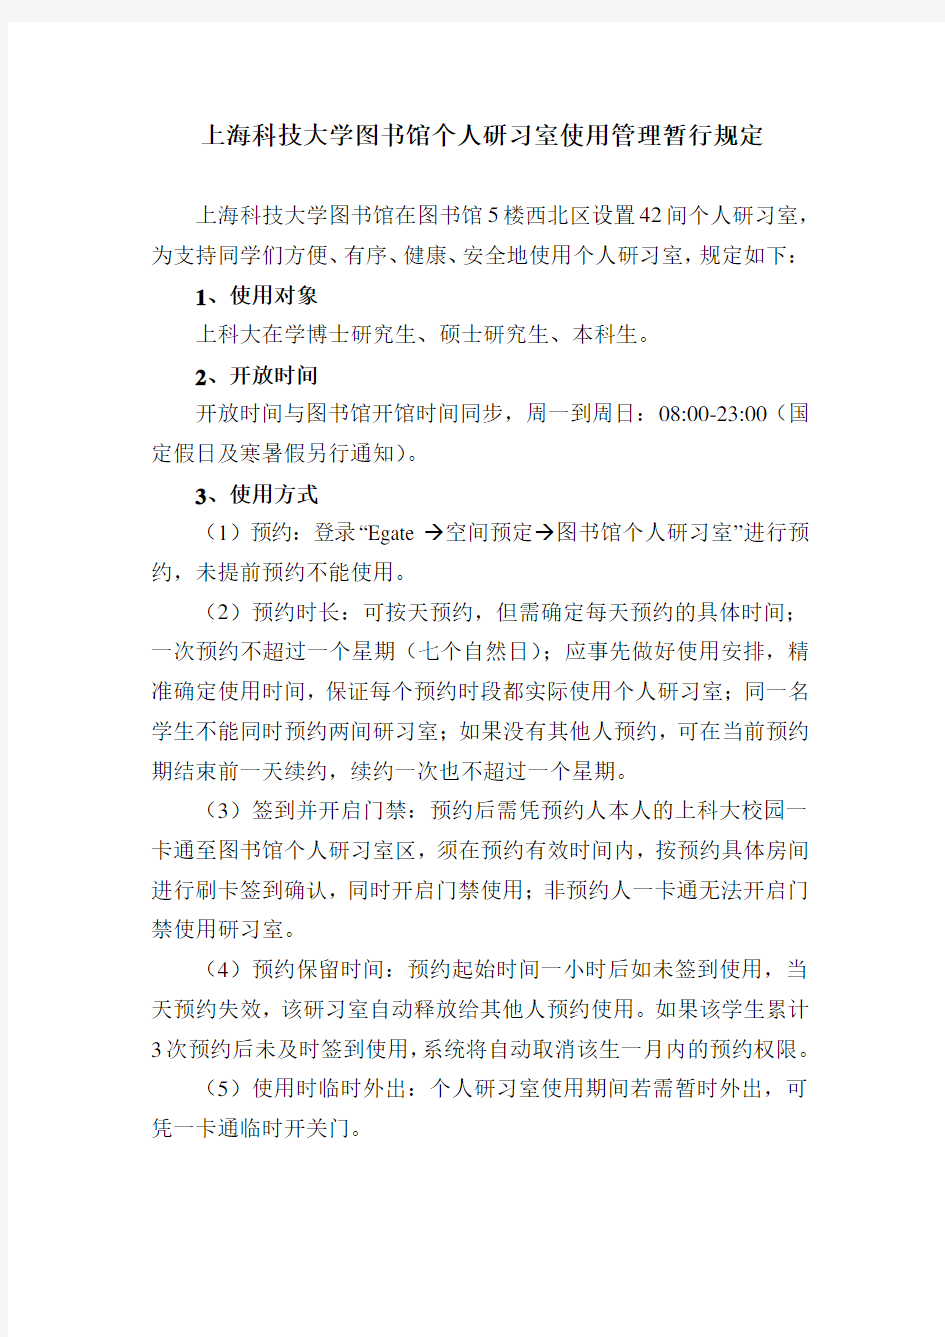 上海科技大学图书馆个人研习室使用管理暂行规定